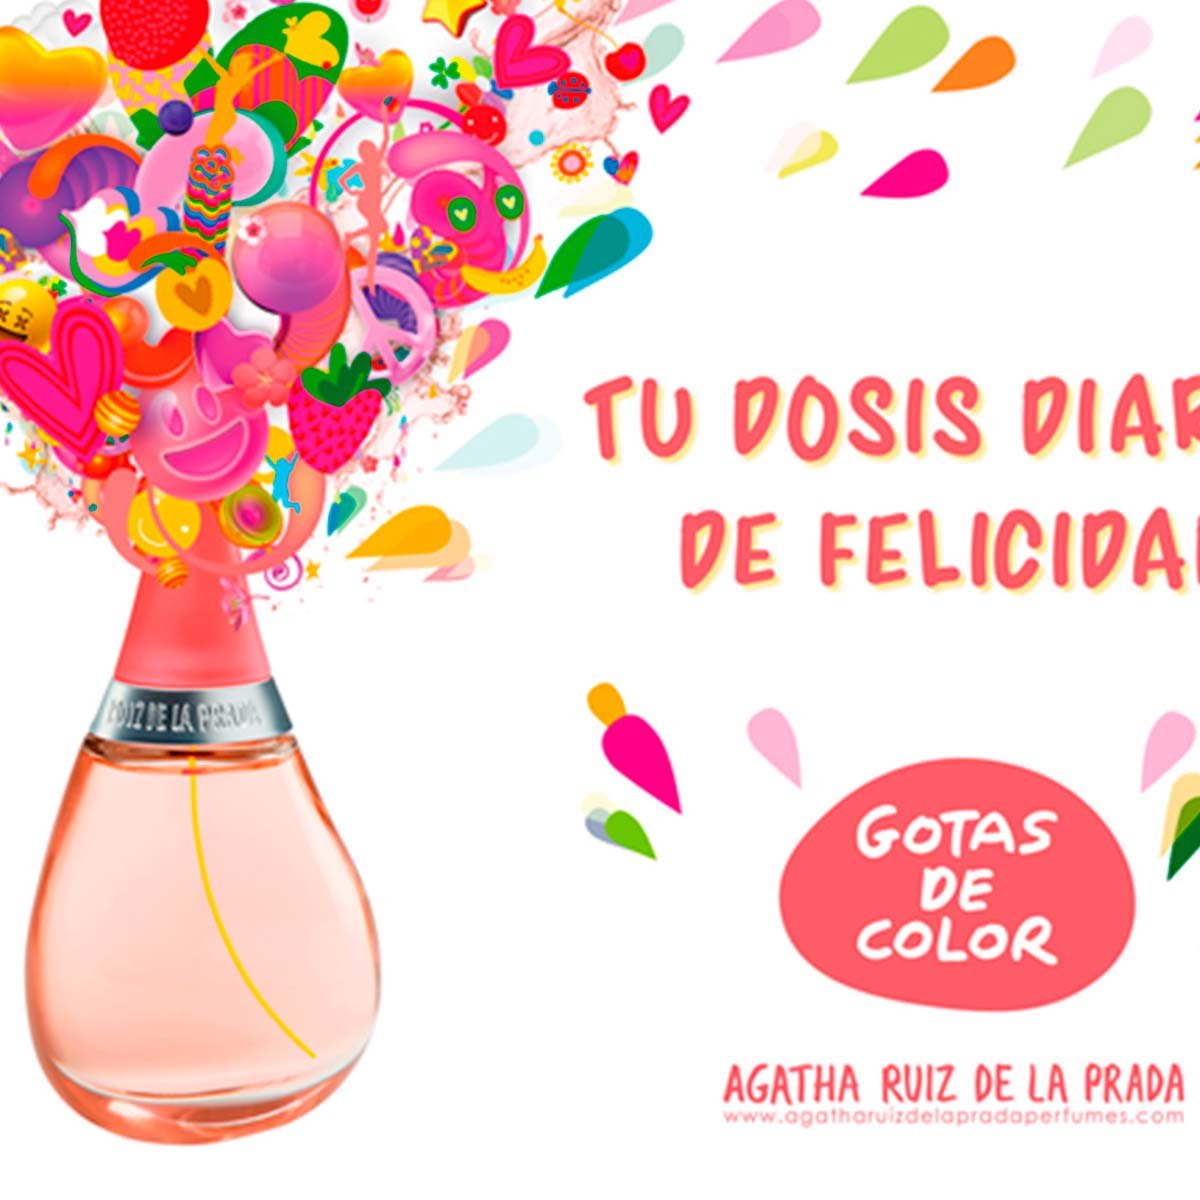 Estuche Fragancia para Dama Agatha Ruiz de la Prada Gotas de Color Edt100Ml+ Esmalte